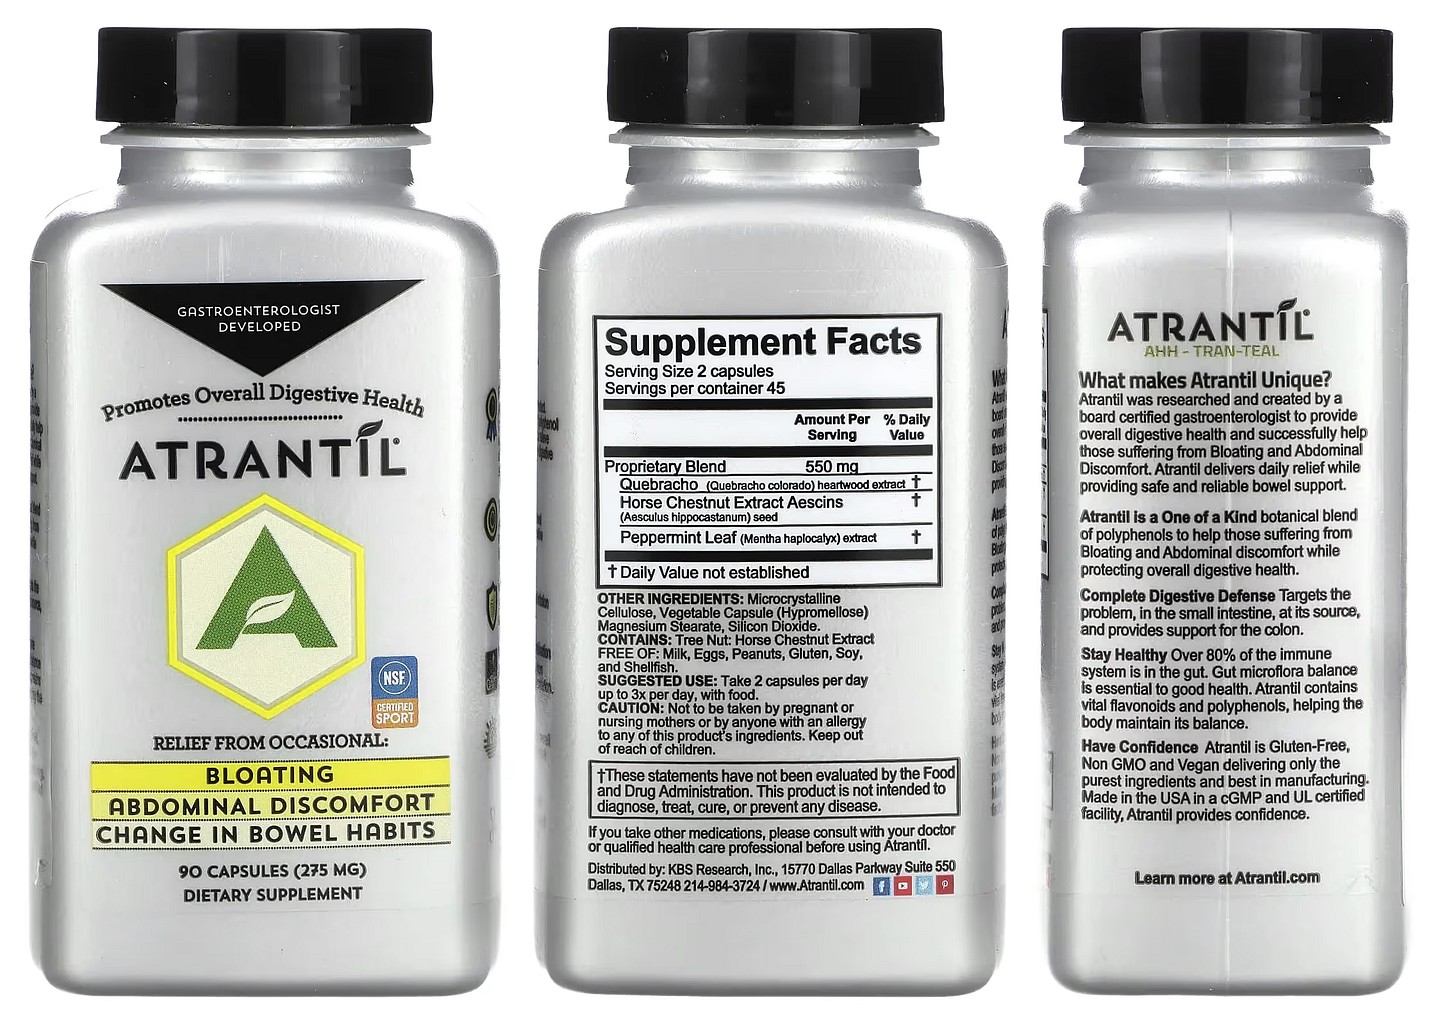 Atrantil, Bloating & Abdominal Discomfort packaging